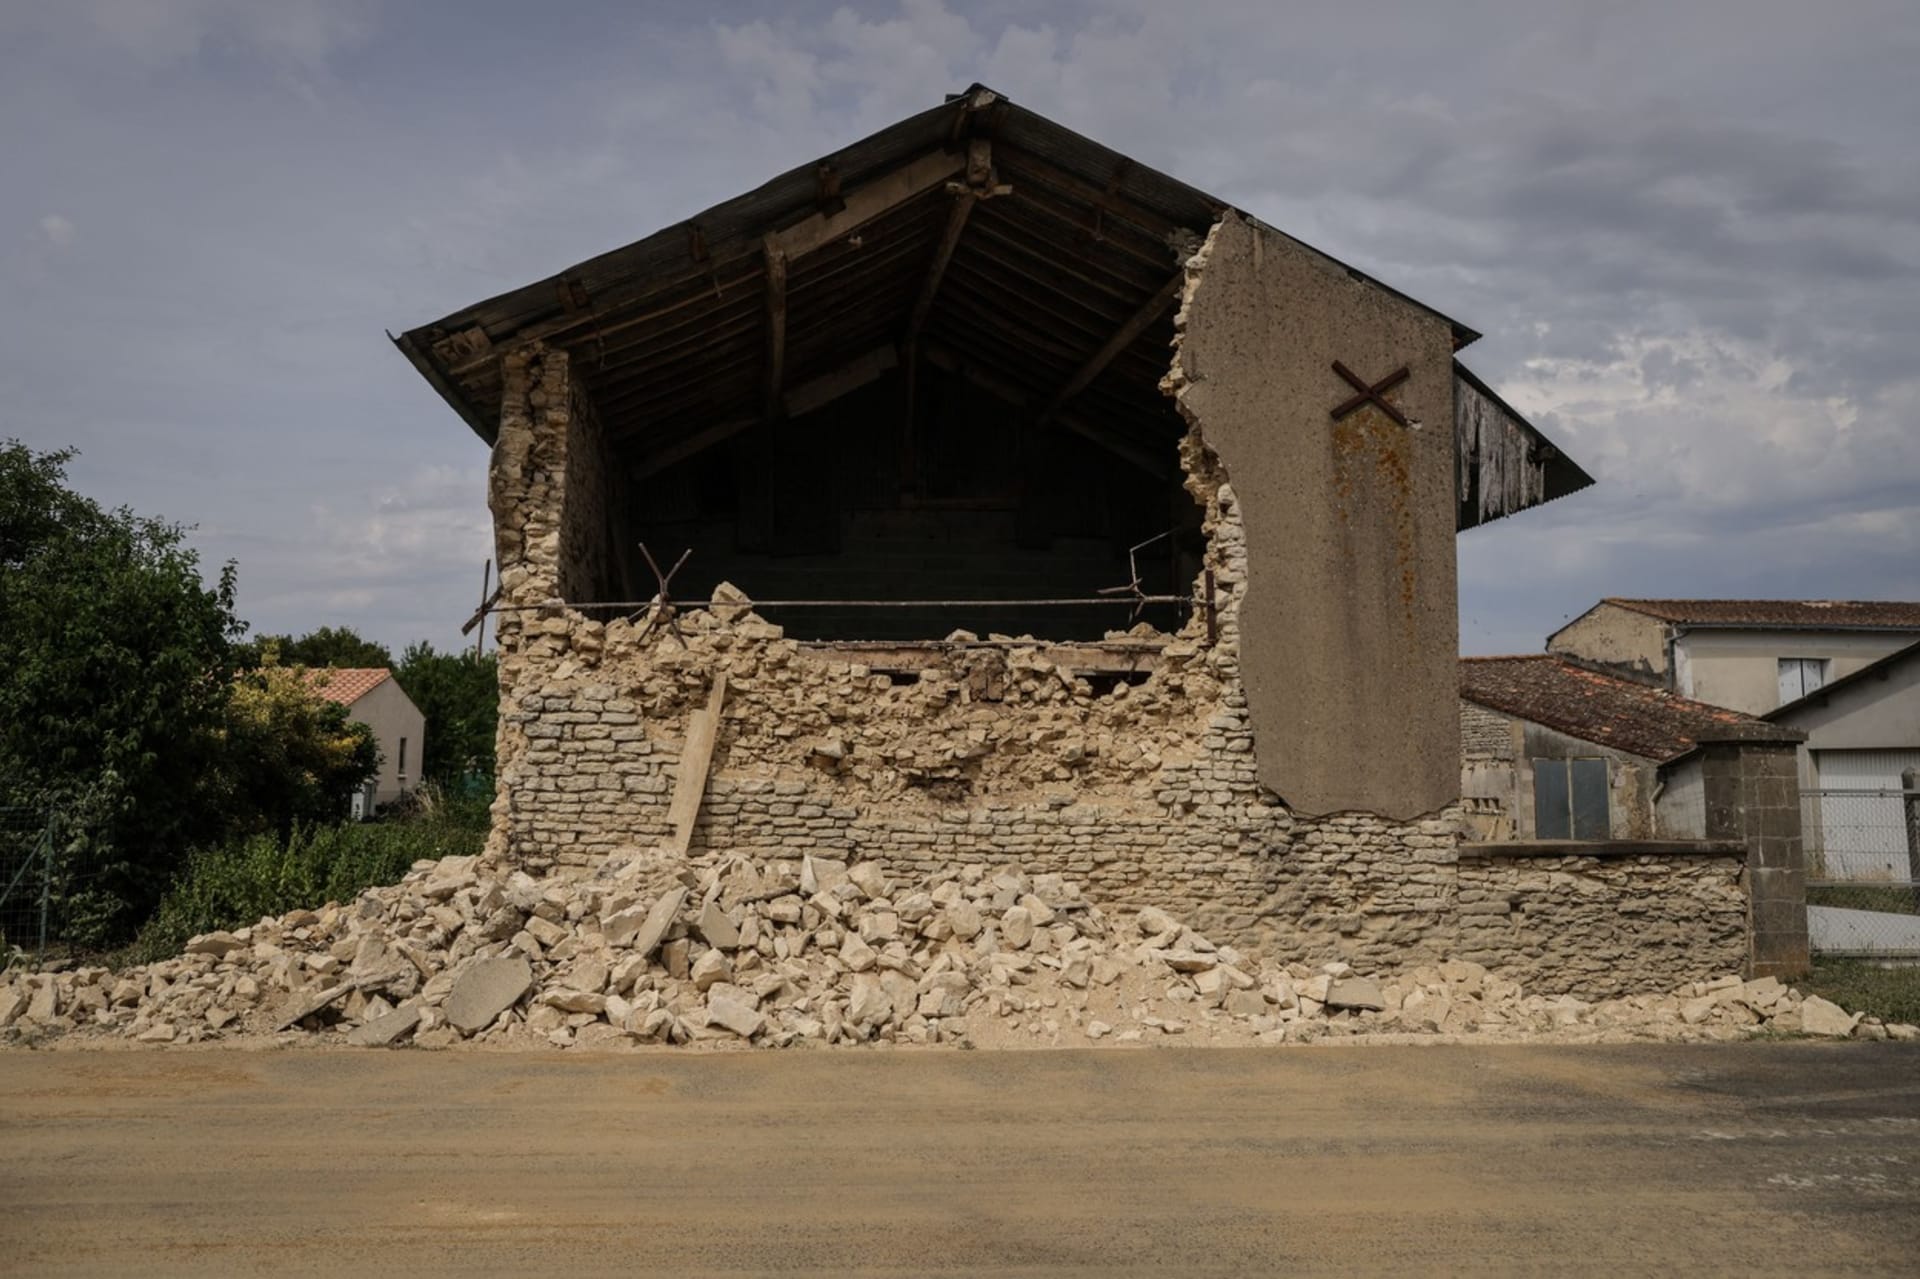 Západ Francie pocítil nezvyklé zemětřesení, poničeny jsou domy, školy i kostely